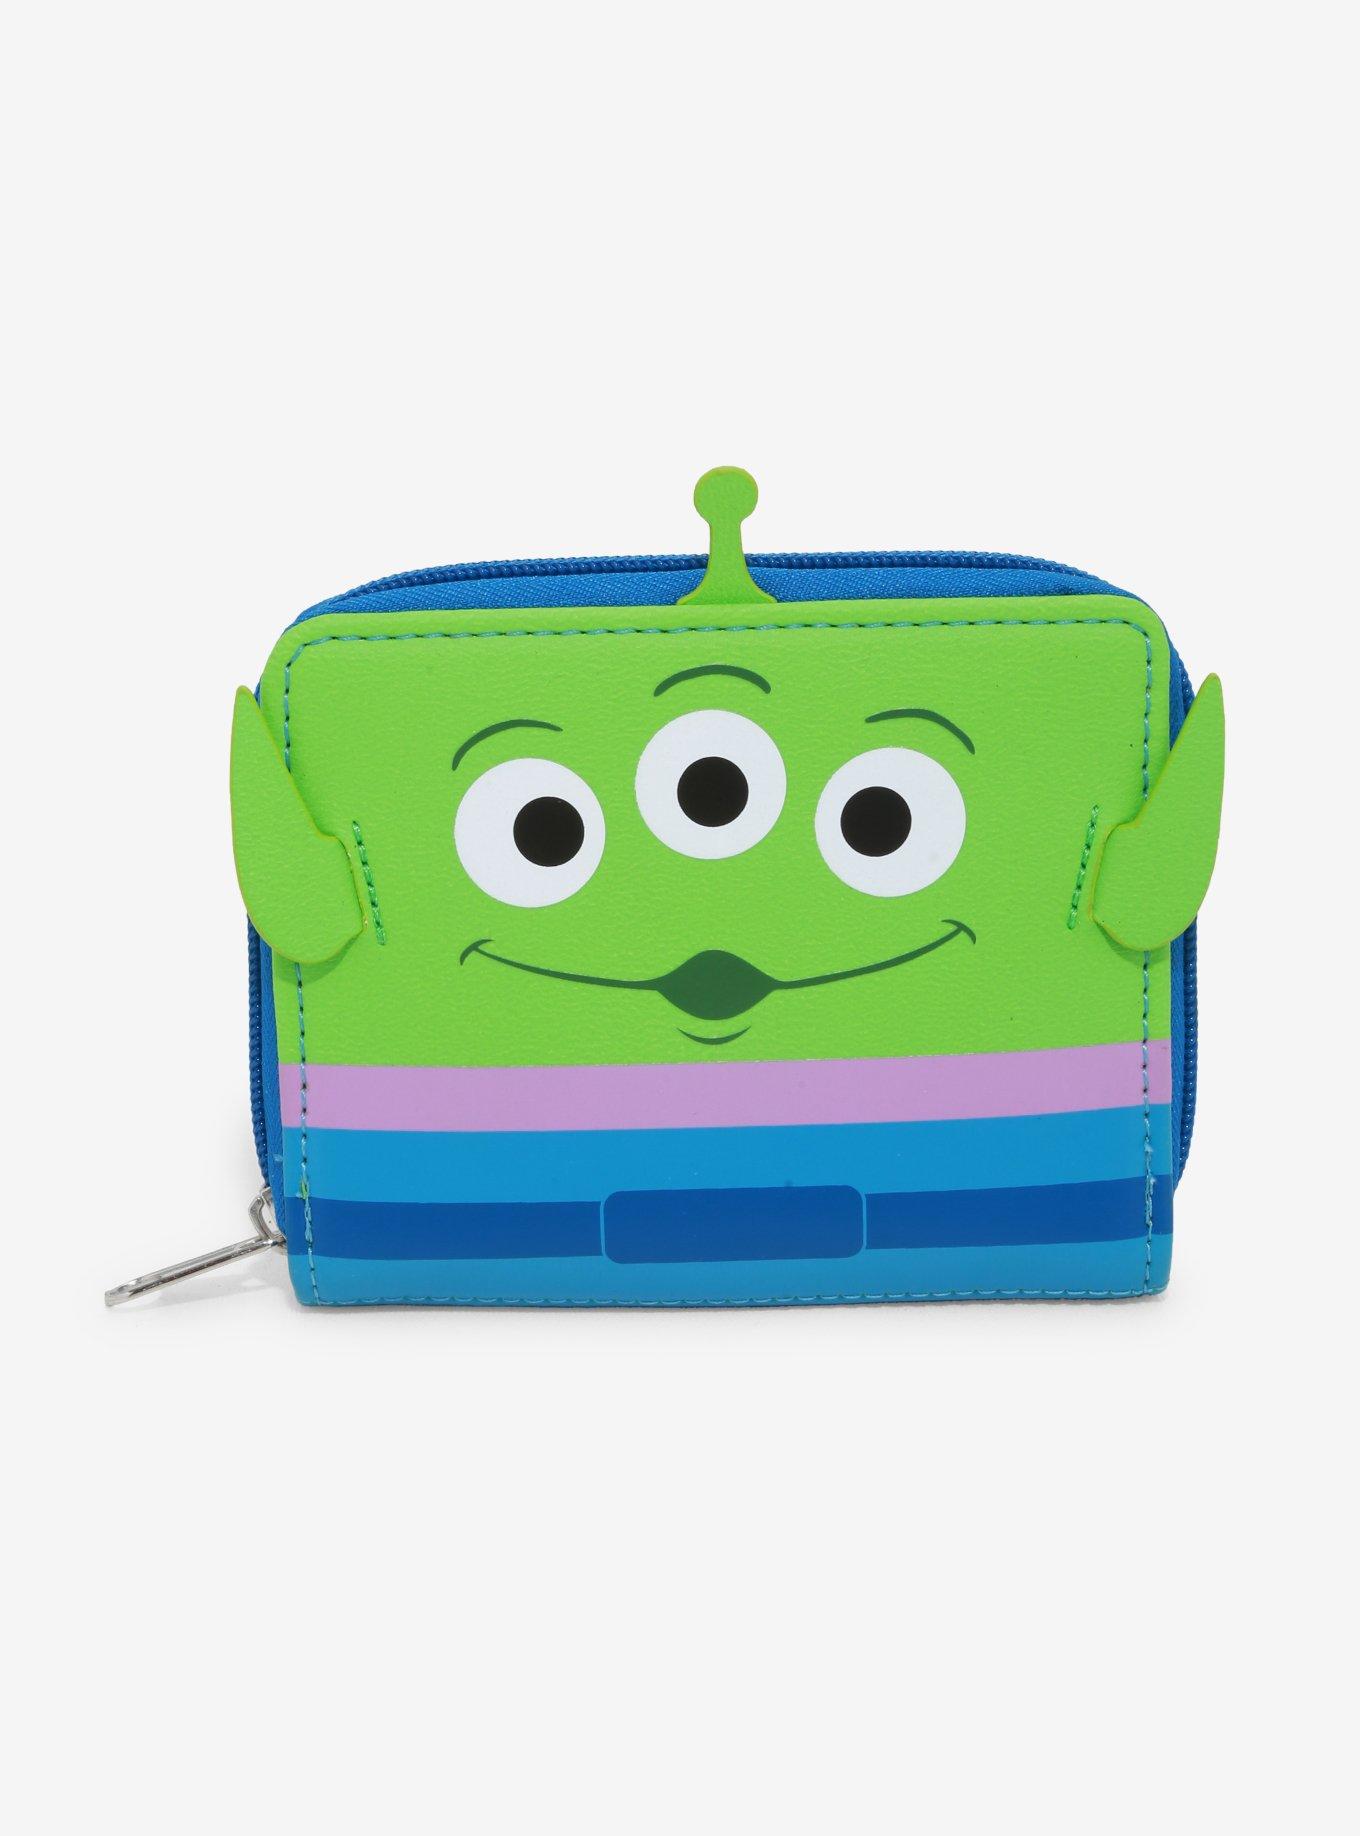 Loungefly Disney Pixar Toy Story Alien Mini Zip Wallet, , hi-res